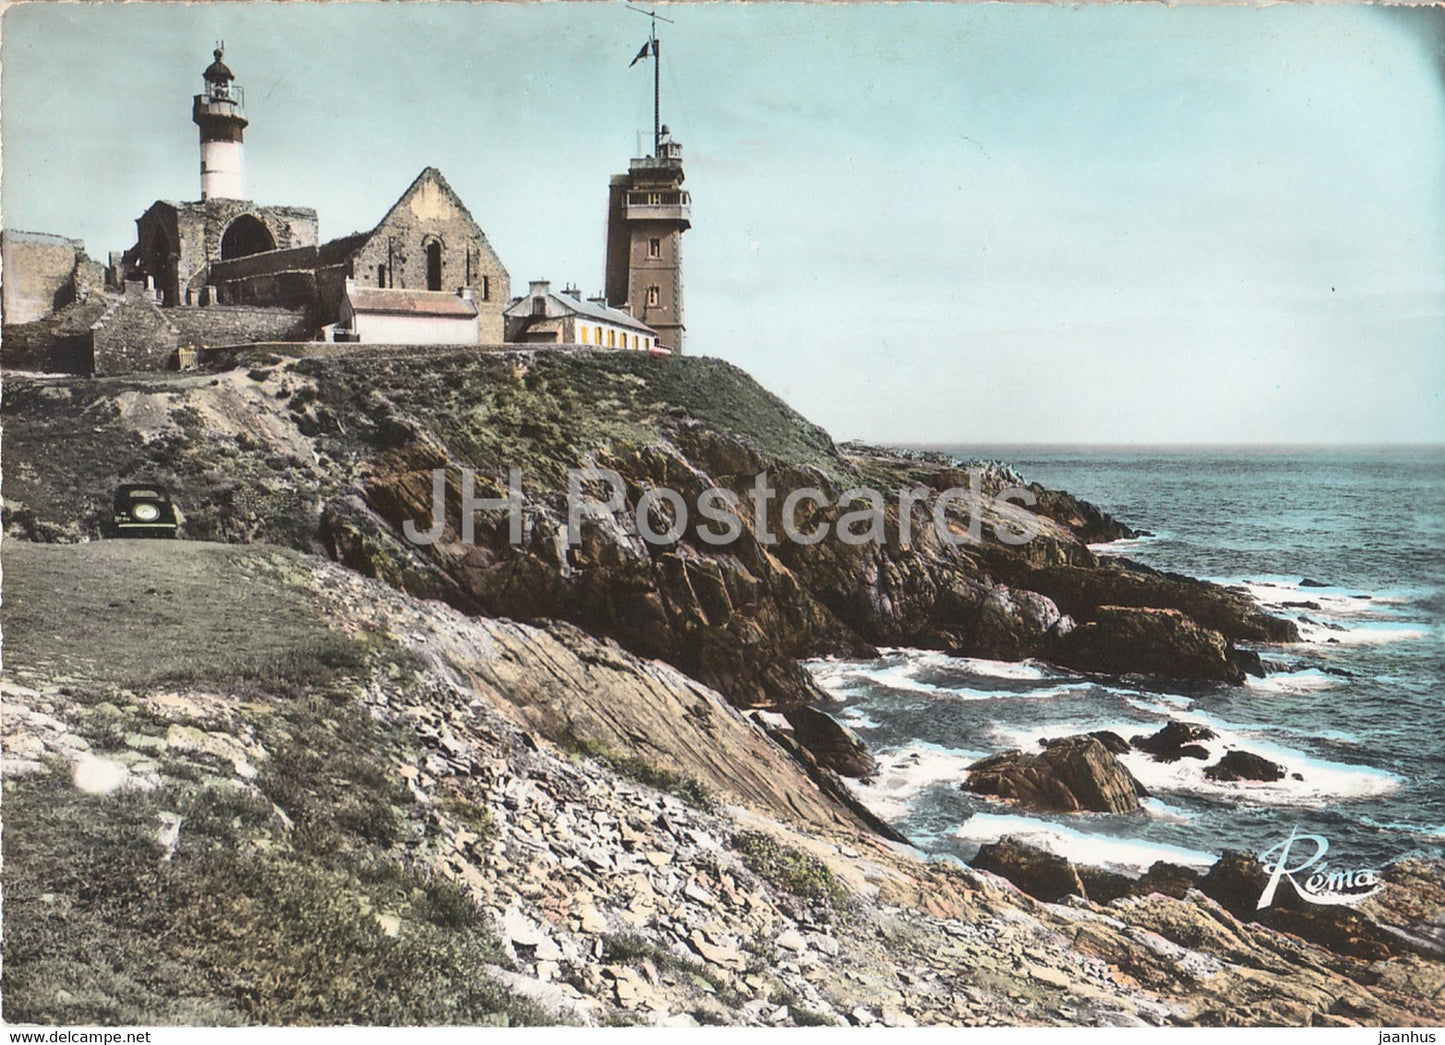 En Bretagne - La Pointe Saint Mathieu - Le Semaphore et le Phare - lighthouse - France - unused - JH Postcards